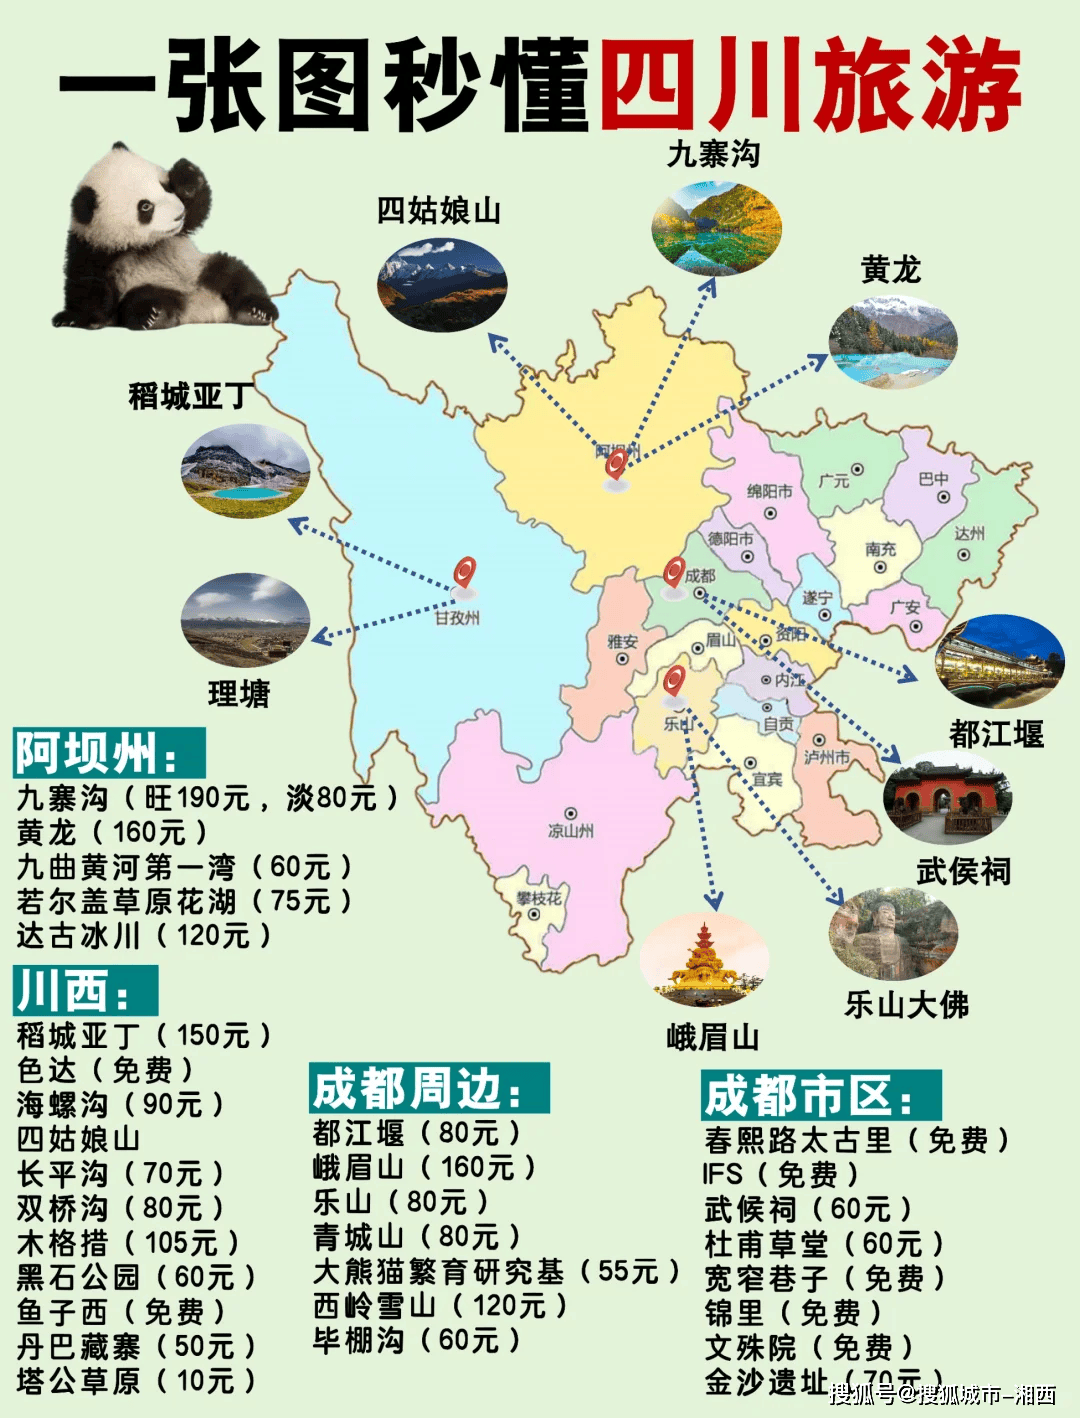 四川风景区旅游景点排行榜